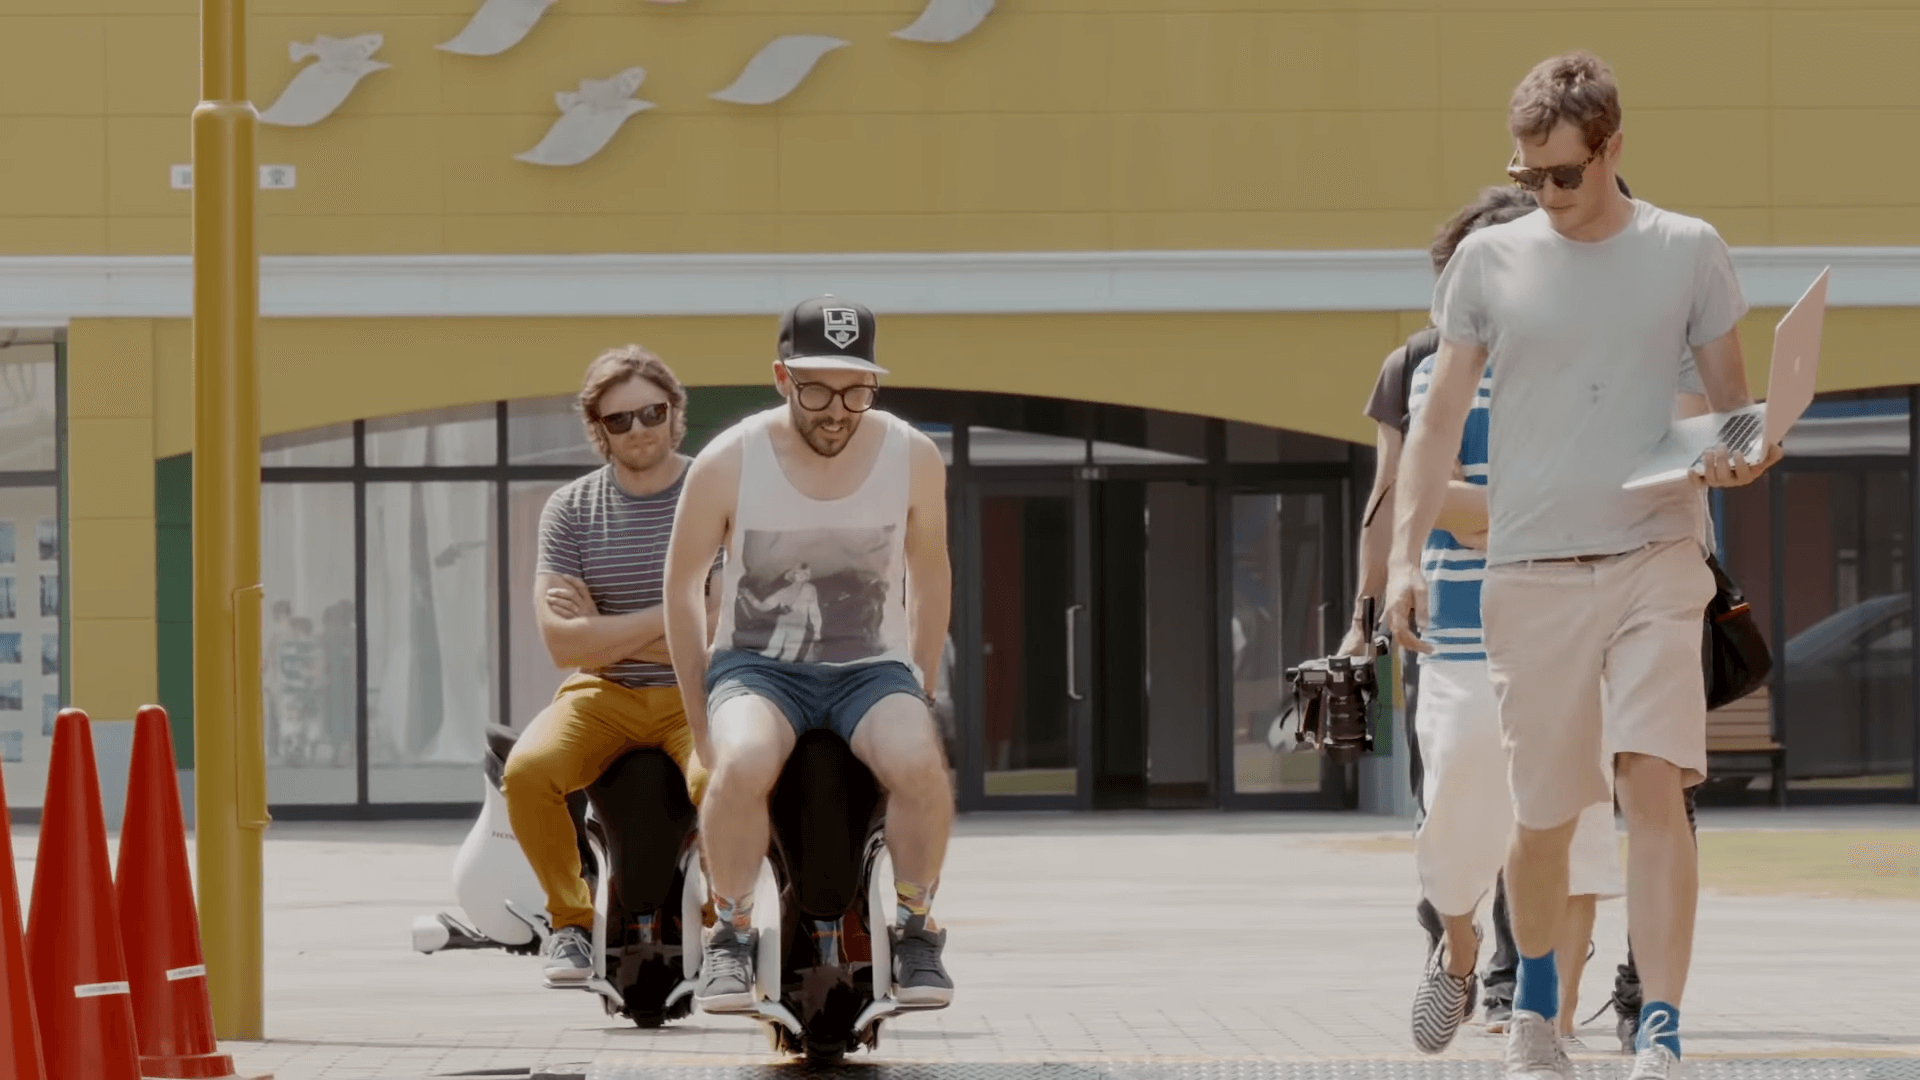 〈I Won’t Let You Down〉MV空拍一镜到底，OK Go再现好莱坞标志歌舞插图